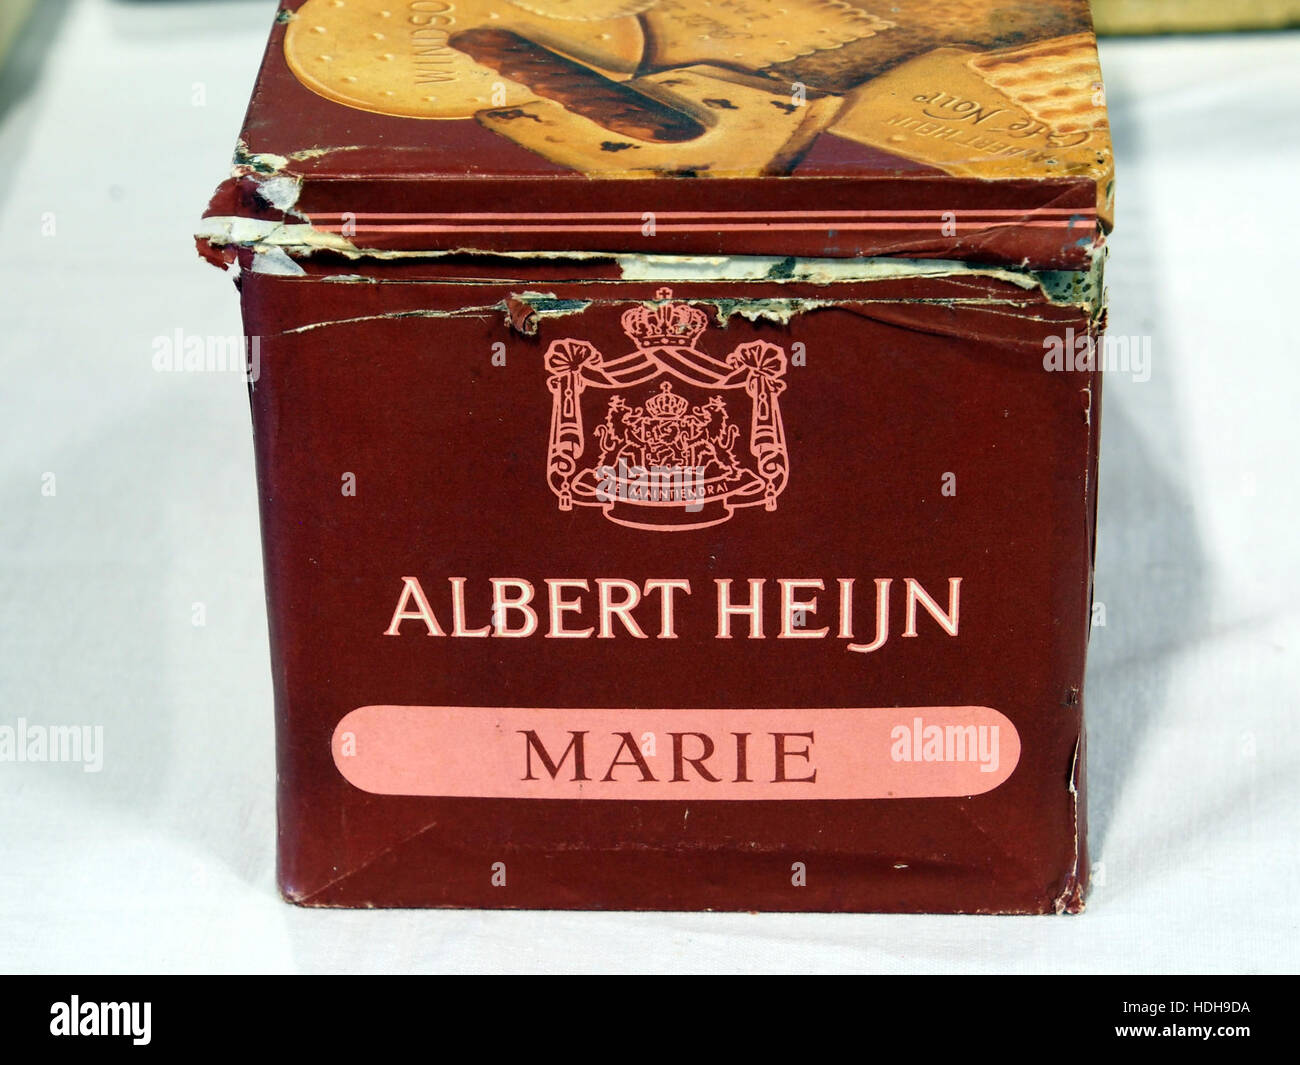 Albert Heijn biscuits blik pic6 Stock Photo